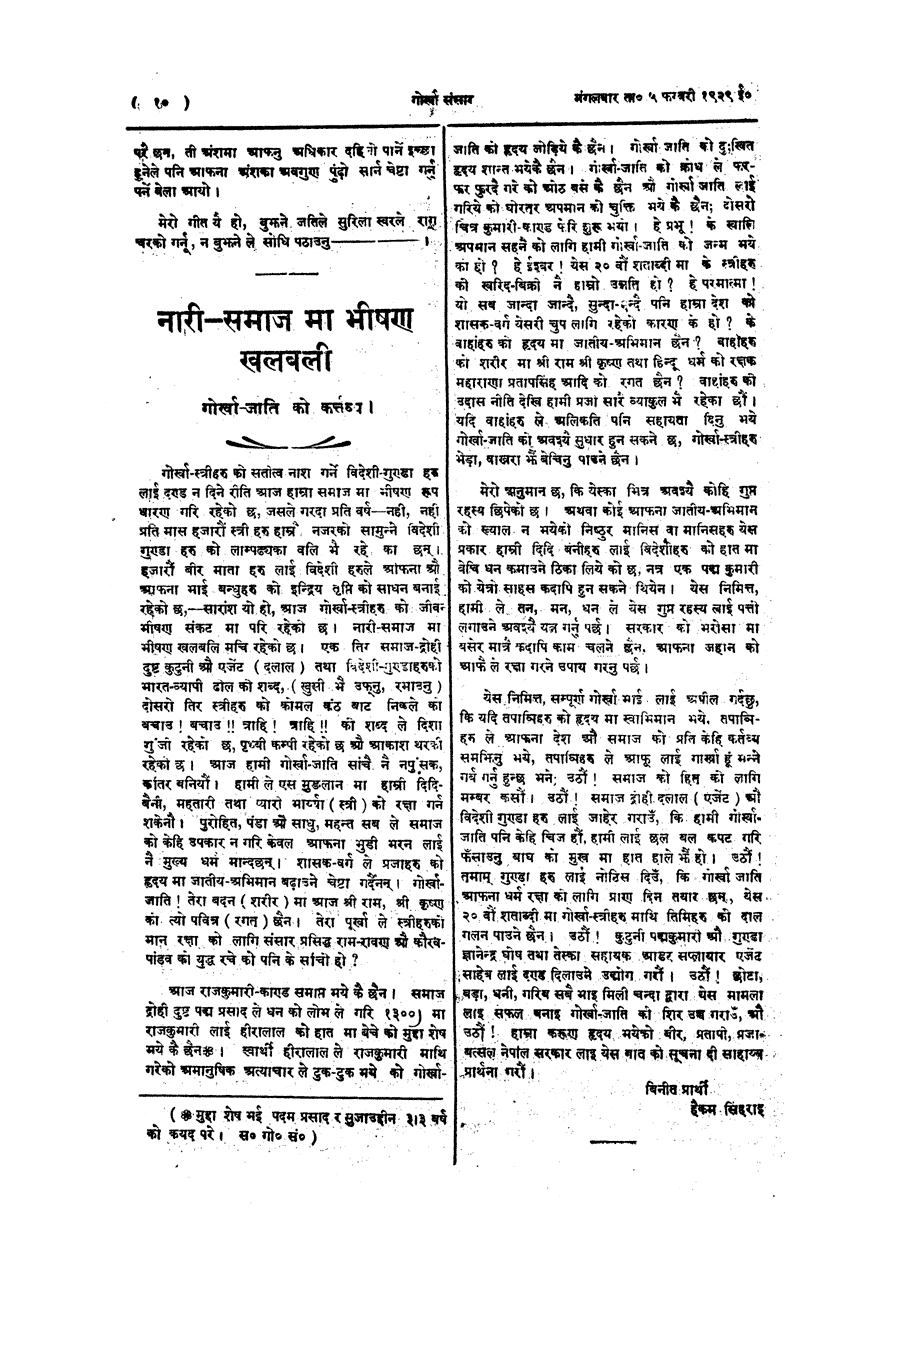 Gorkha Sansar, 5 Feb 1929, page 10